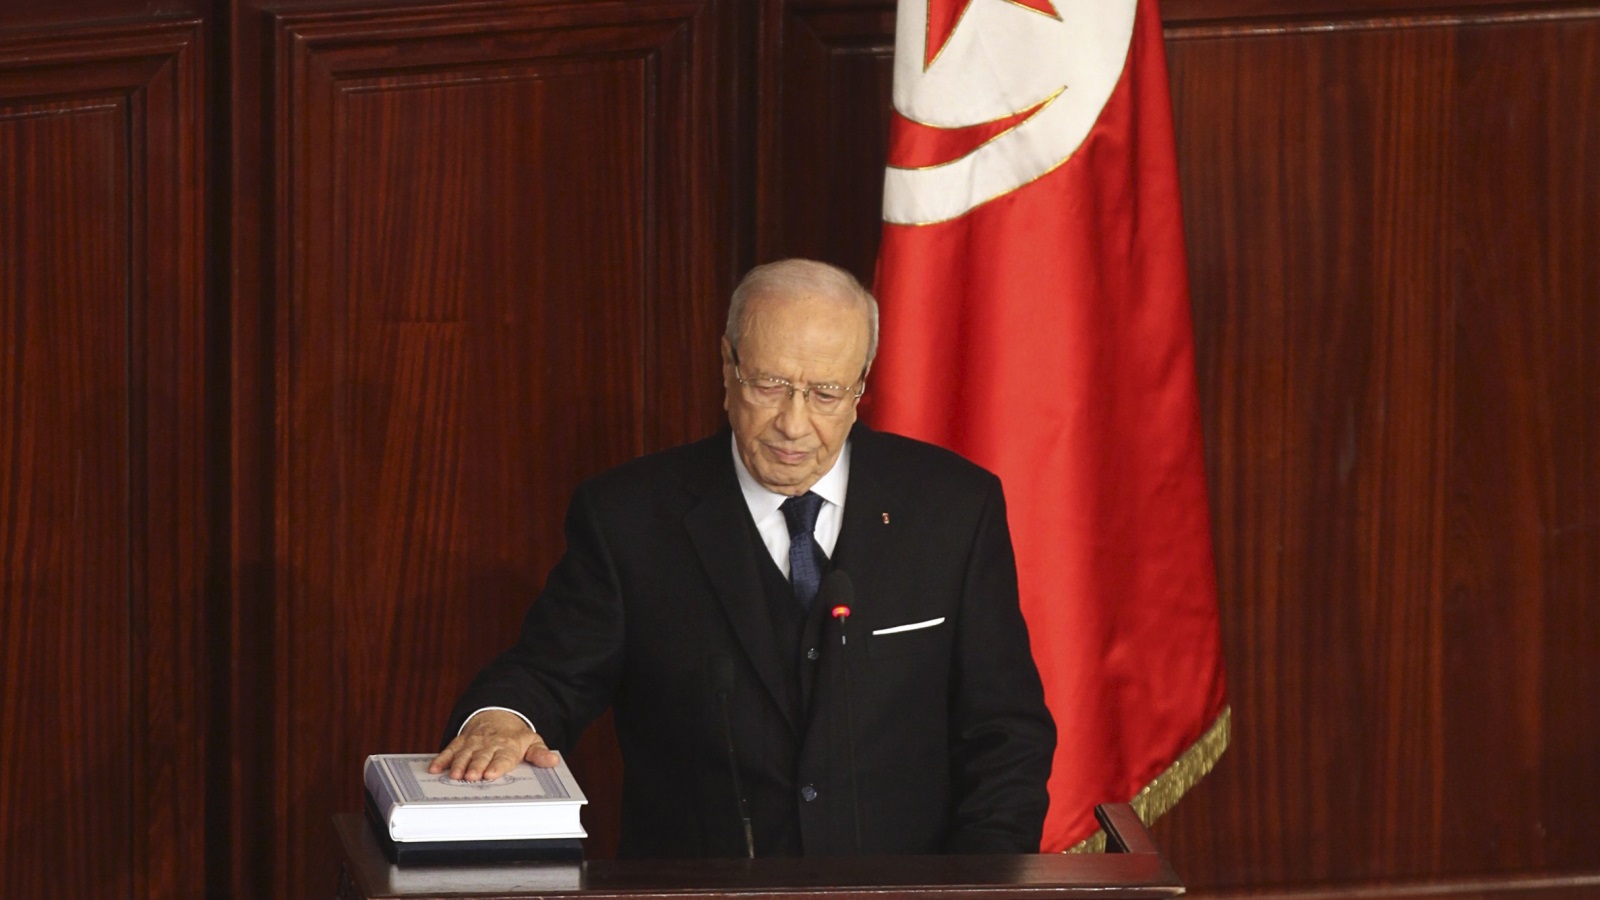  الباجي قايد السبسي يقسم اليمين الدستوري رئيسا لتونس في 31 سبتمبر 2014 (رويترز)